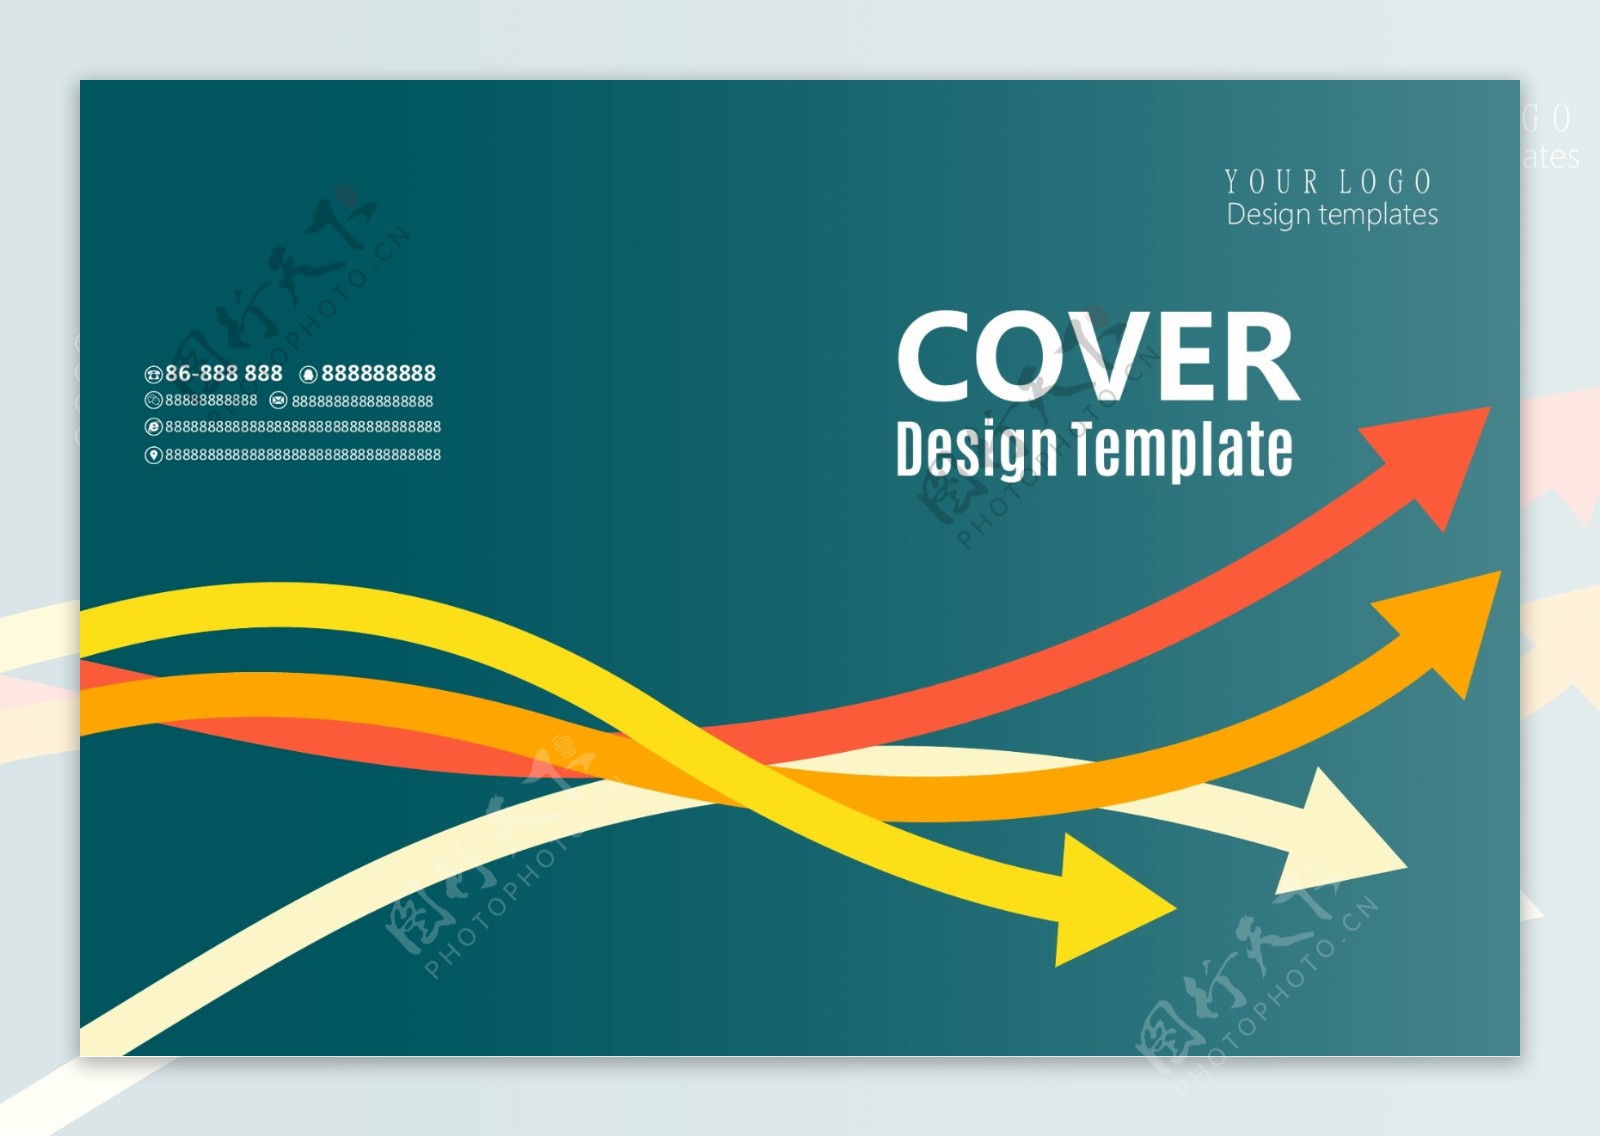 创意时尚线条简洁大气企业宣传画册封面